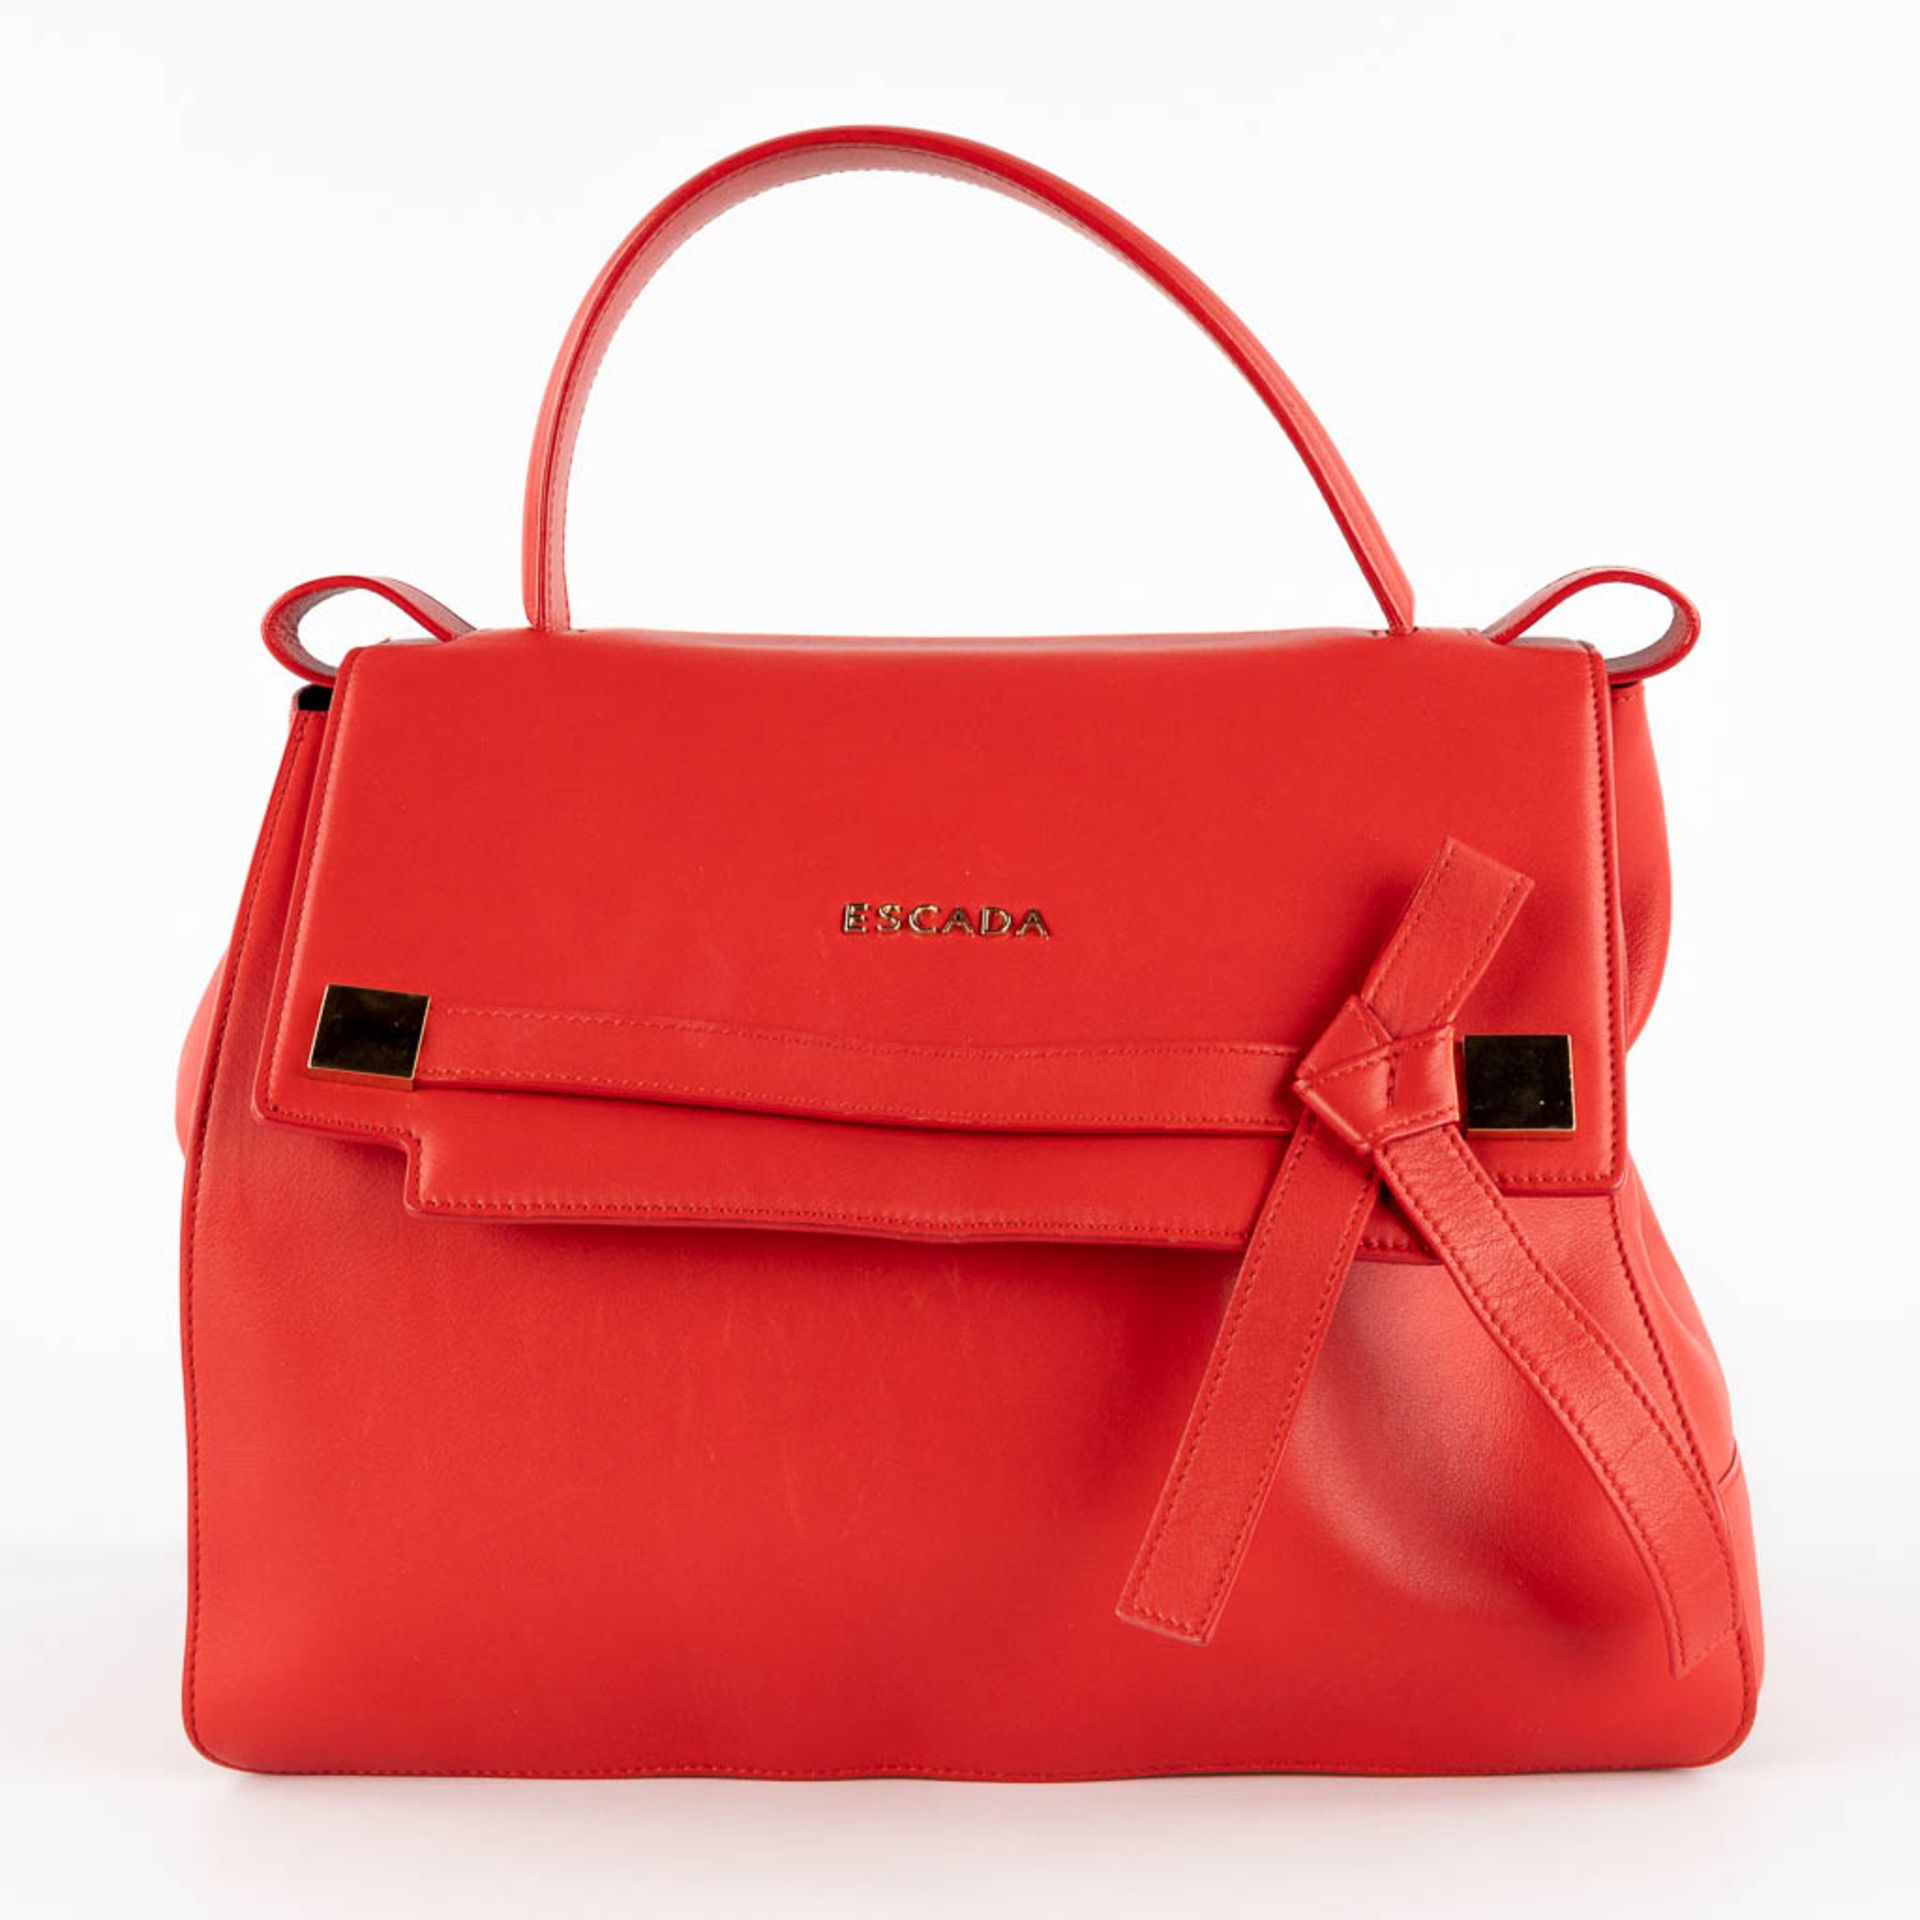 Escada, a handbag made of red leather. (W:33 x H:28 cm) - Image 3 of 17